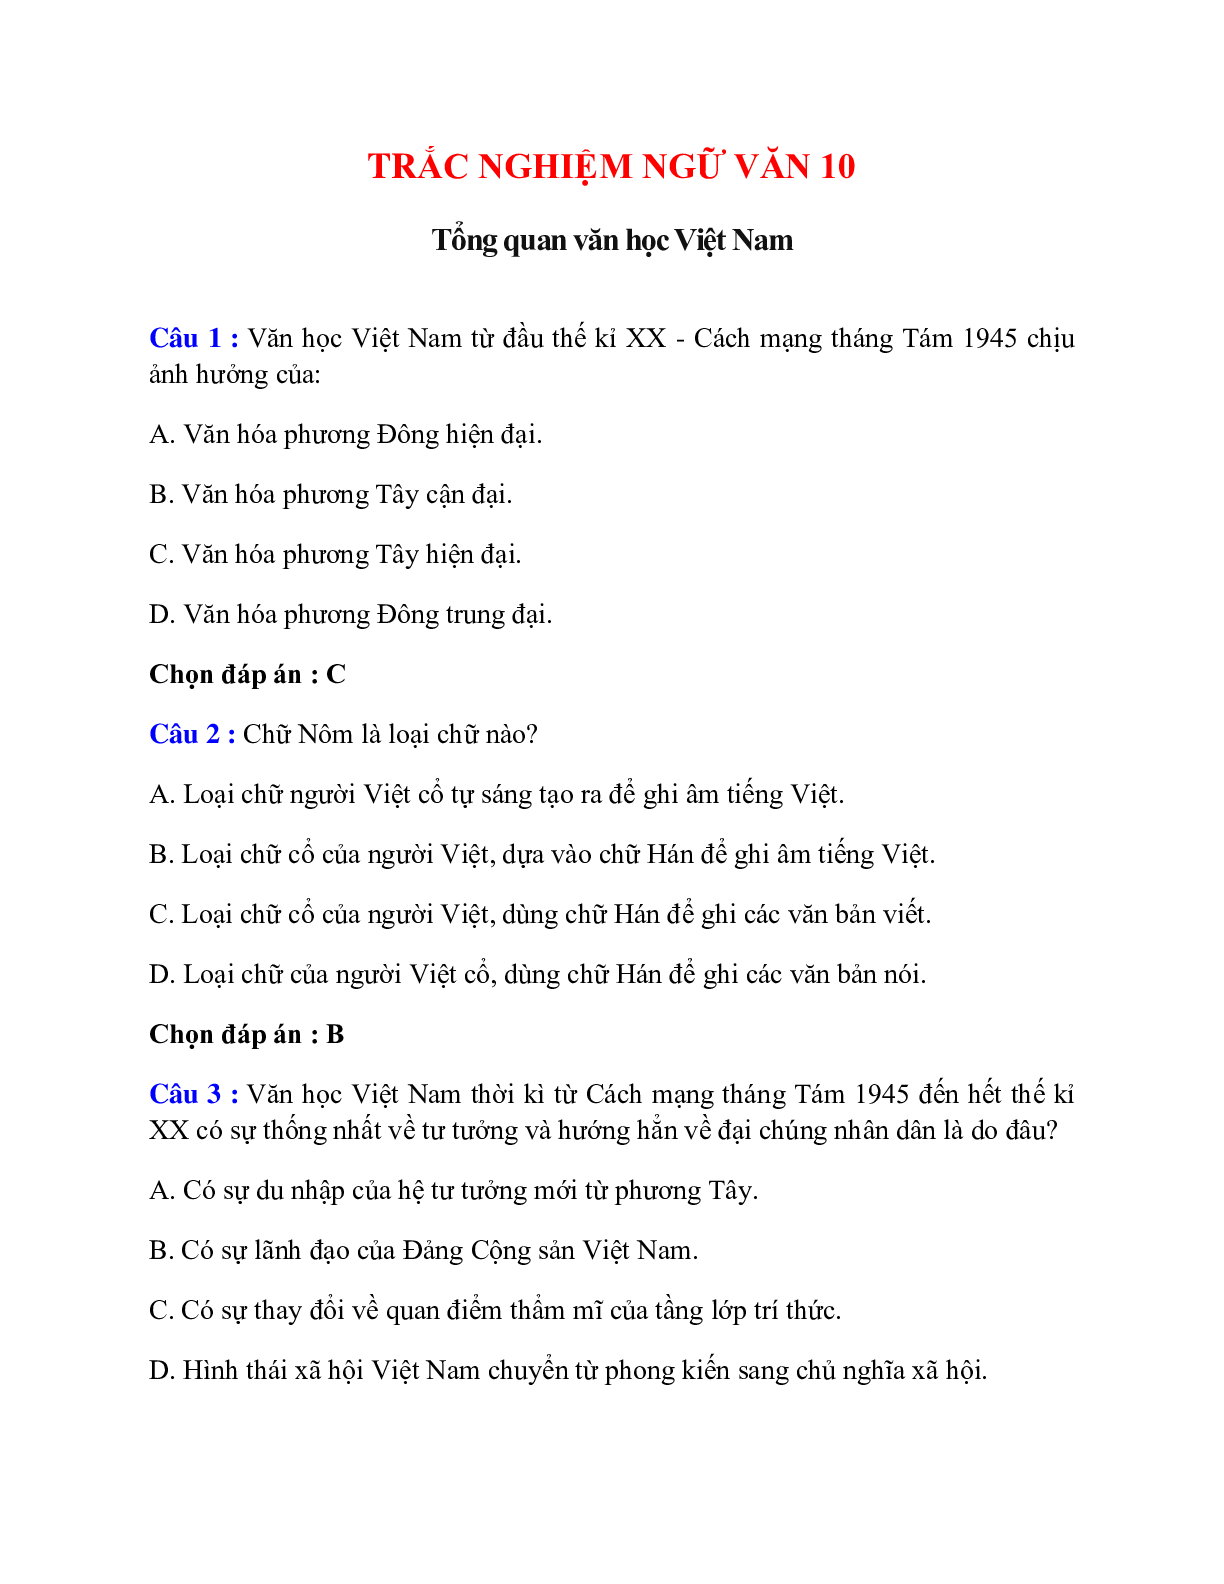 Trắc nghiệm Tổng quan văn học Việt Nam có đáp án – Ngữ văn lớp 10 (trang 1)